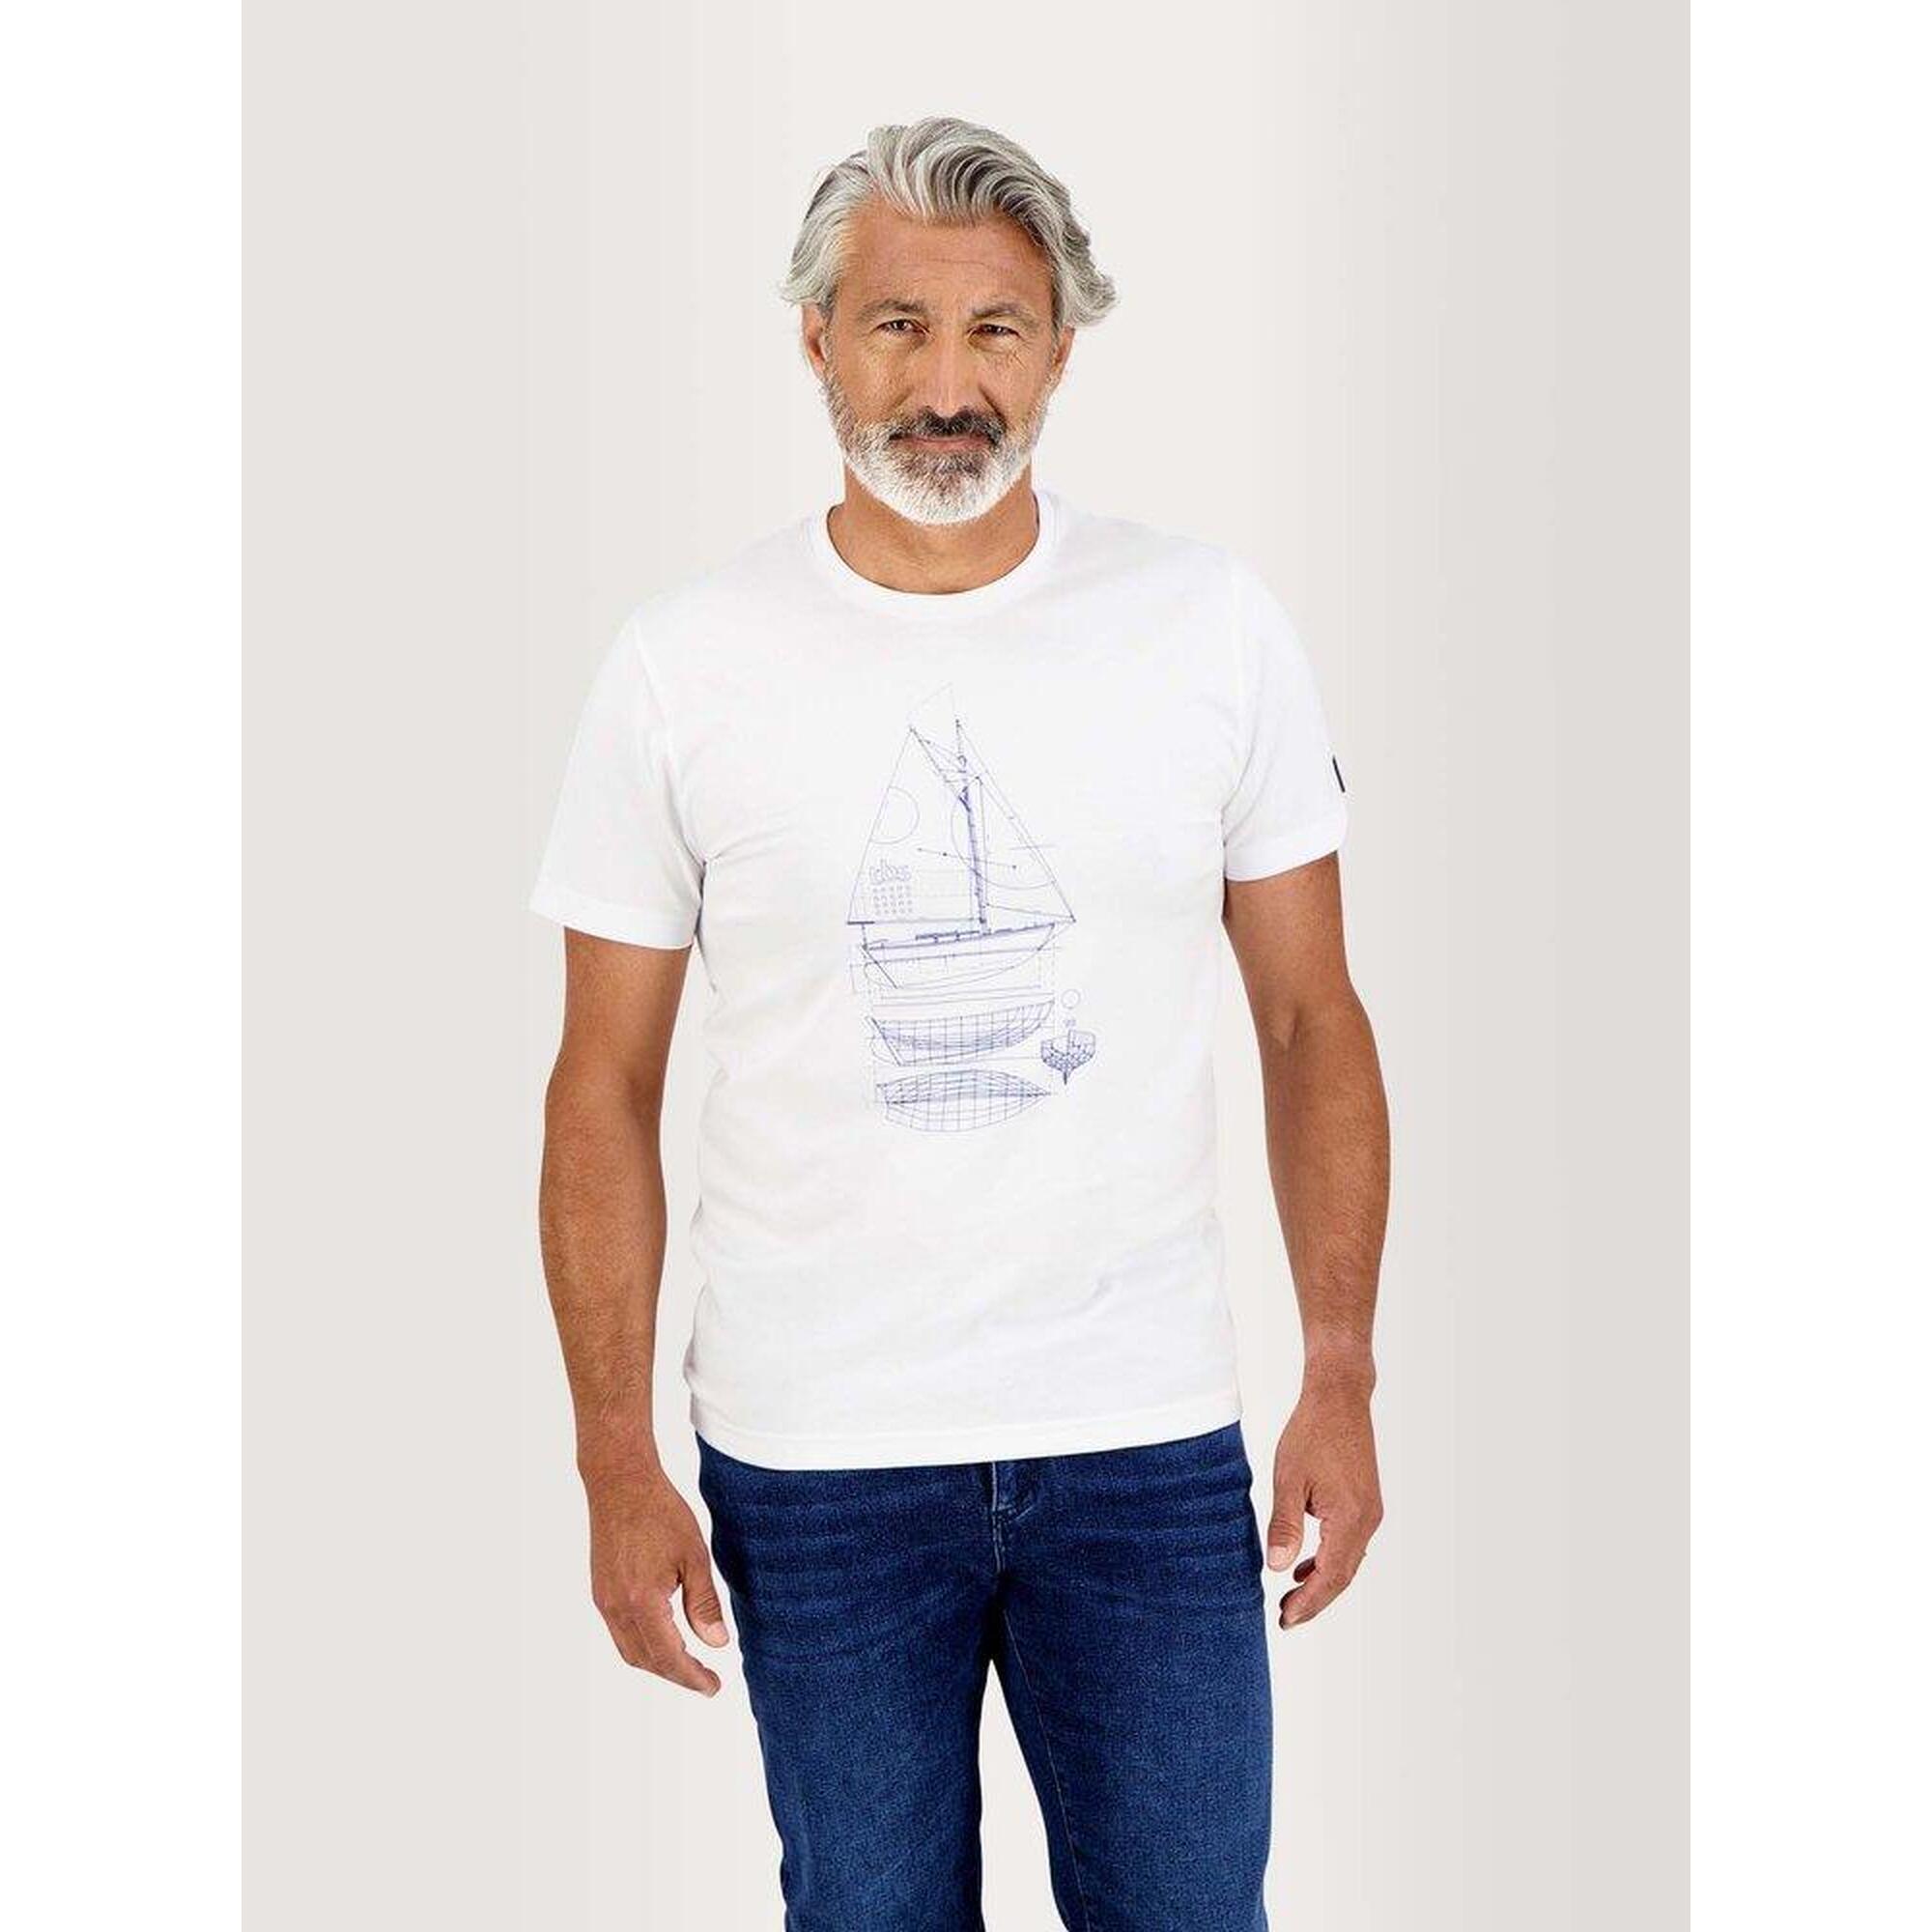 T-shirt manches courtes Homme - DANTETEE Blanc